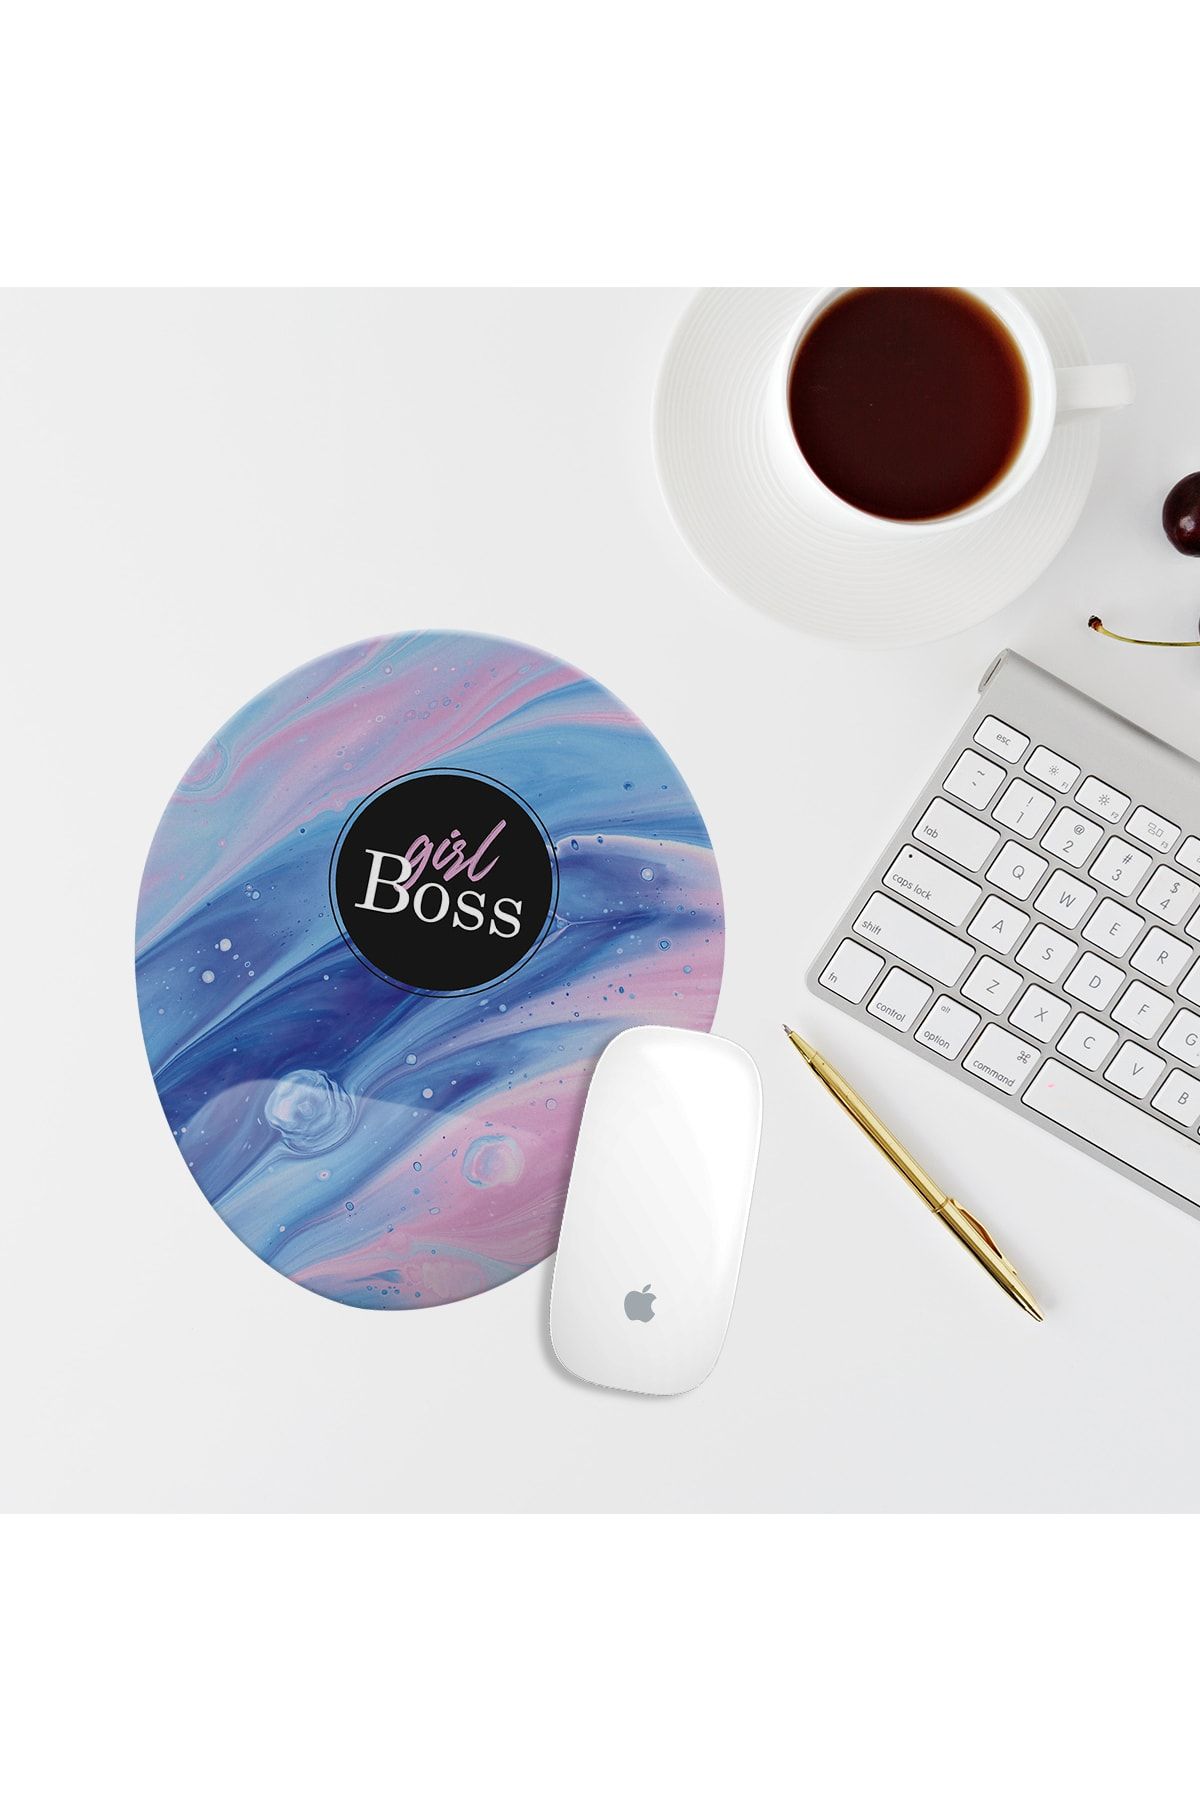 Özer Store Pembe Mavi Girl Boss Yazılı Bilek Destekli Oval Mouse Pad